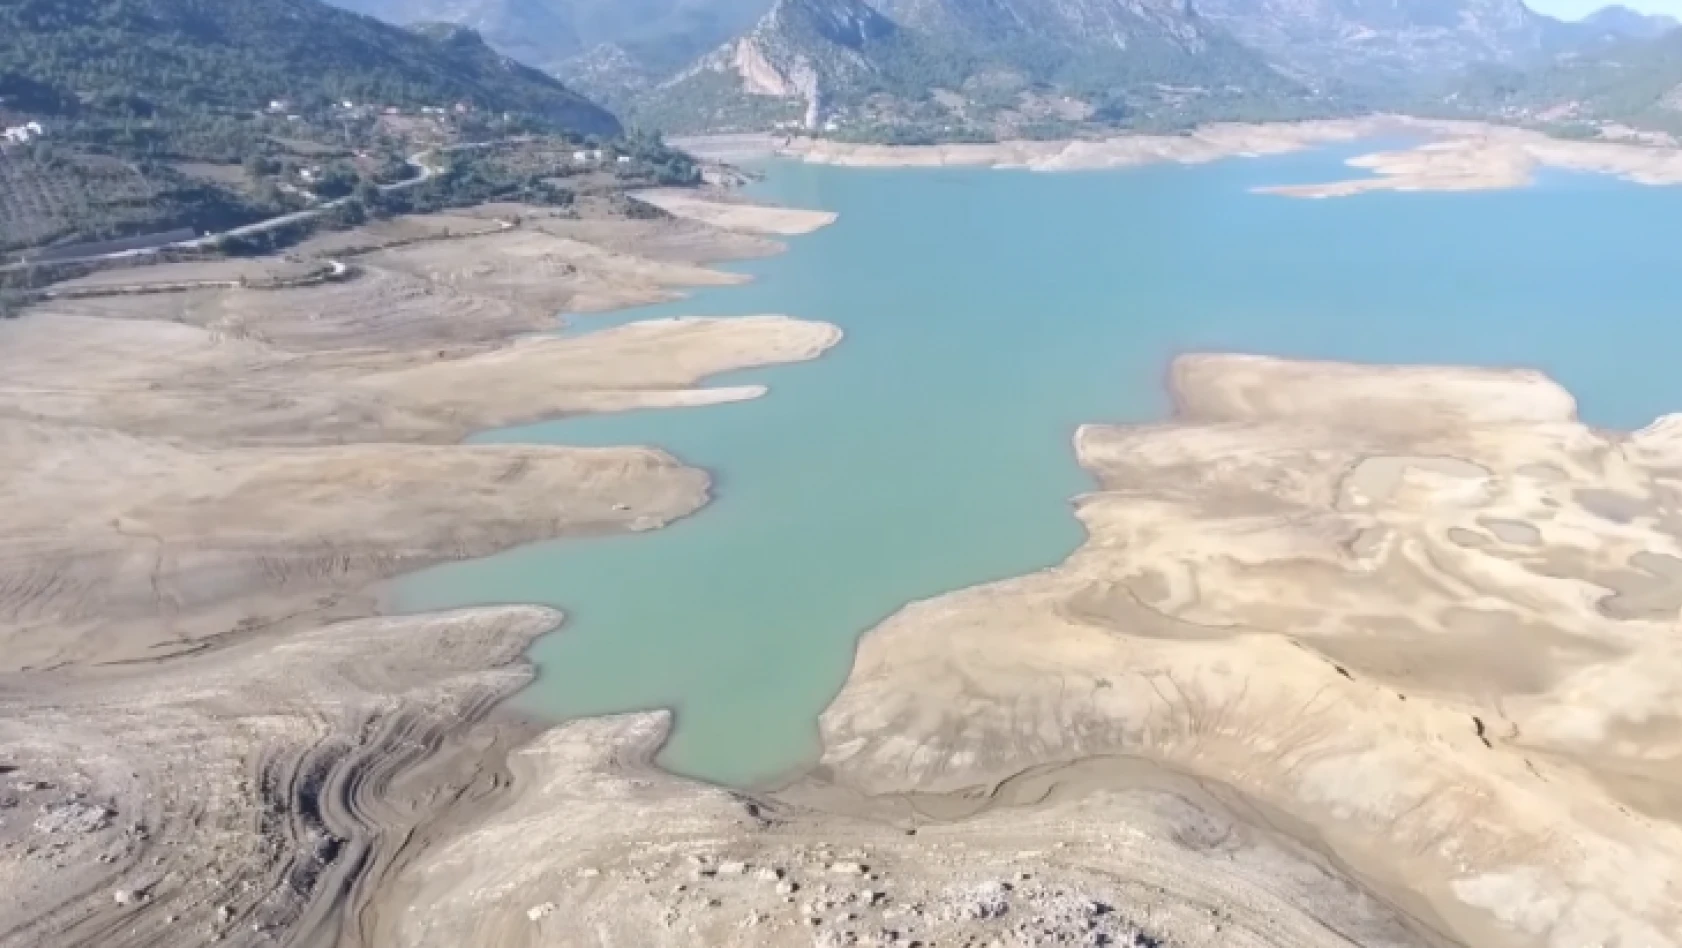 Sular çekildi, Kozan Barajı altındaki tarihi yapılar gün yüzüne çıktı